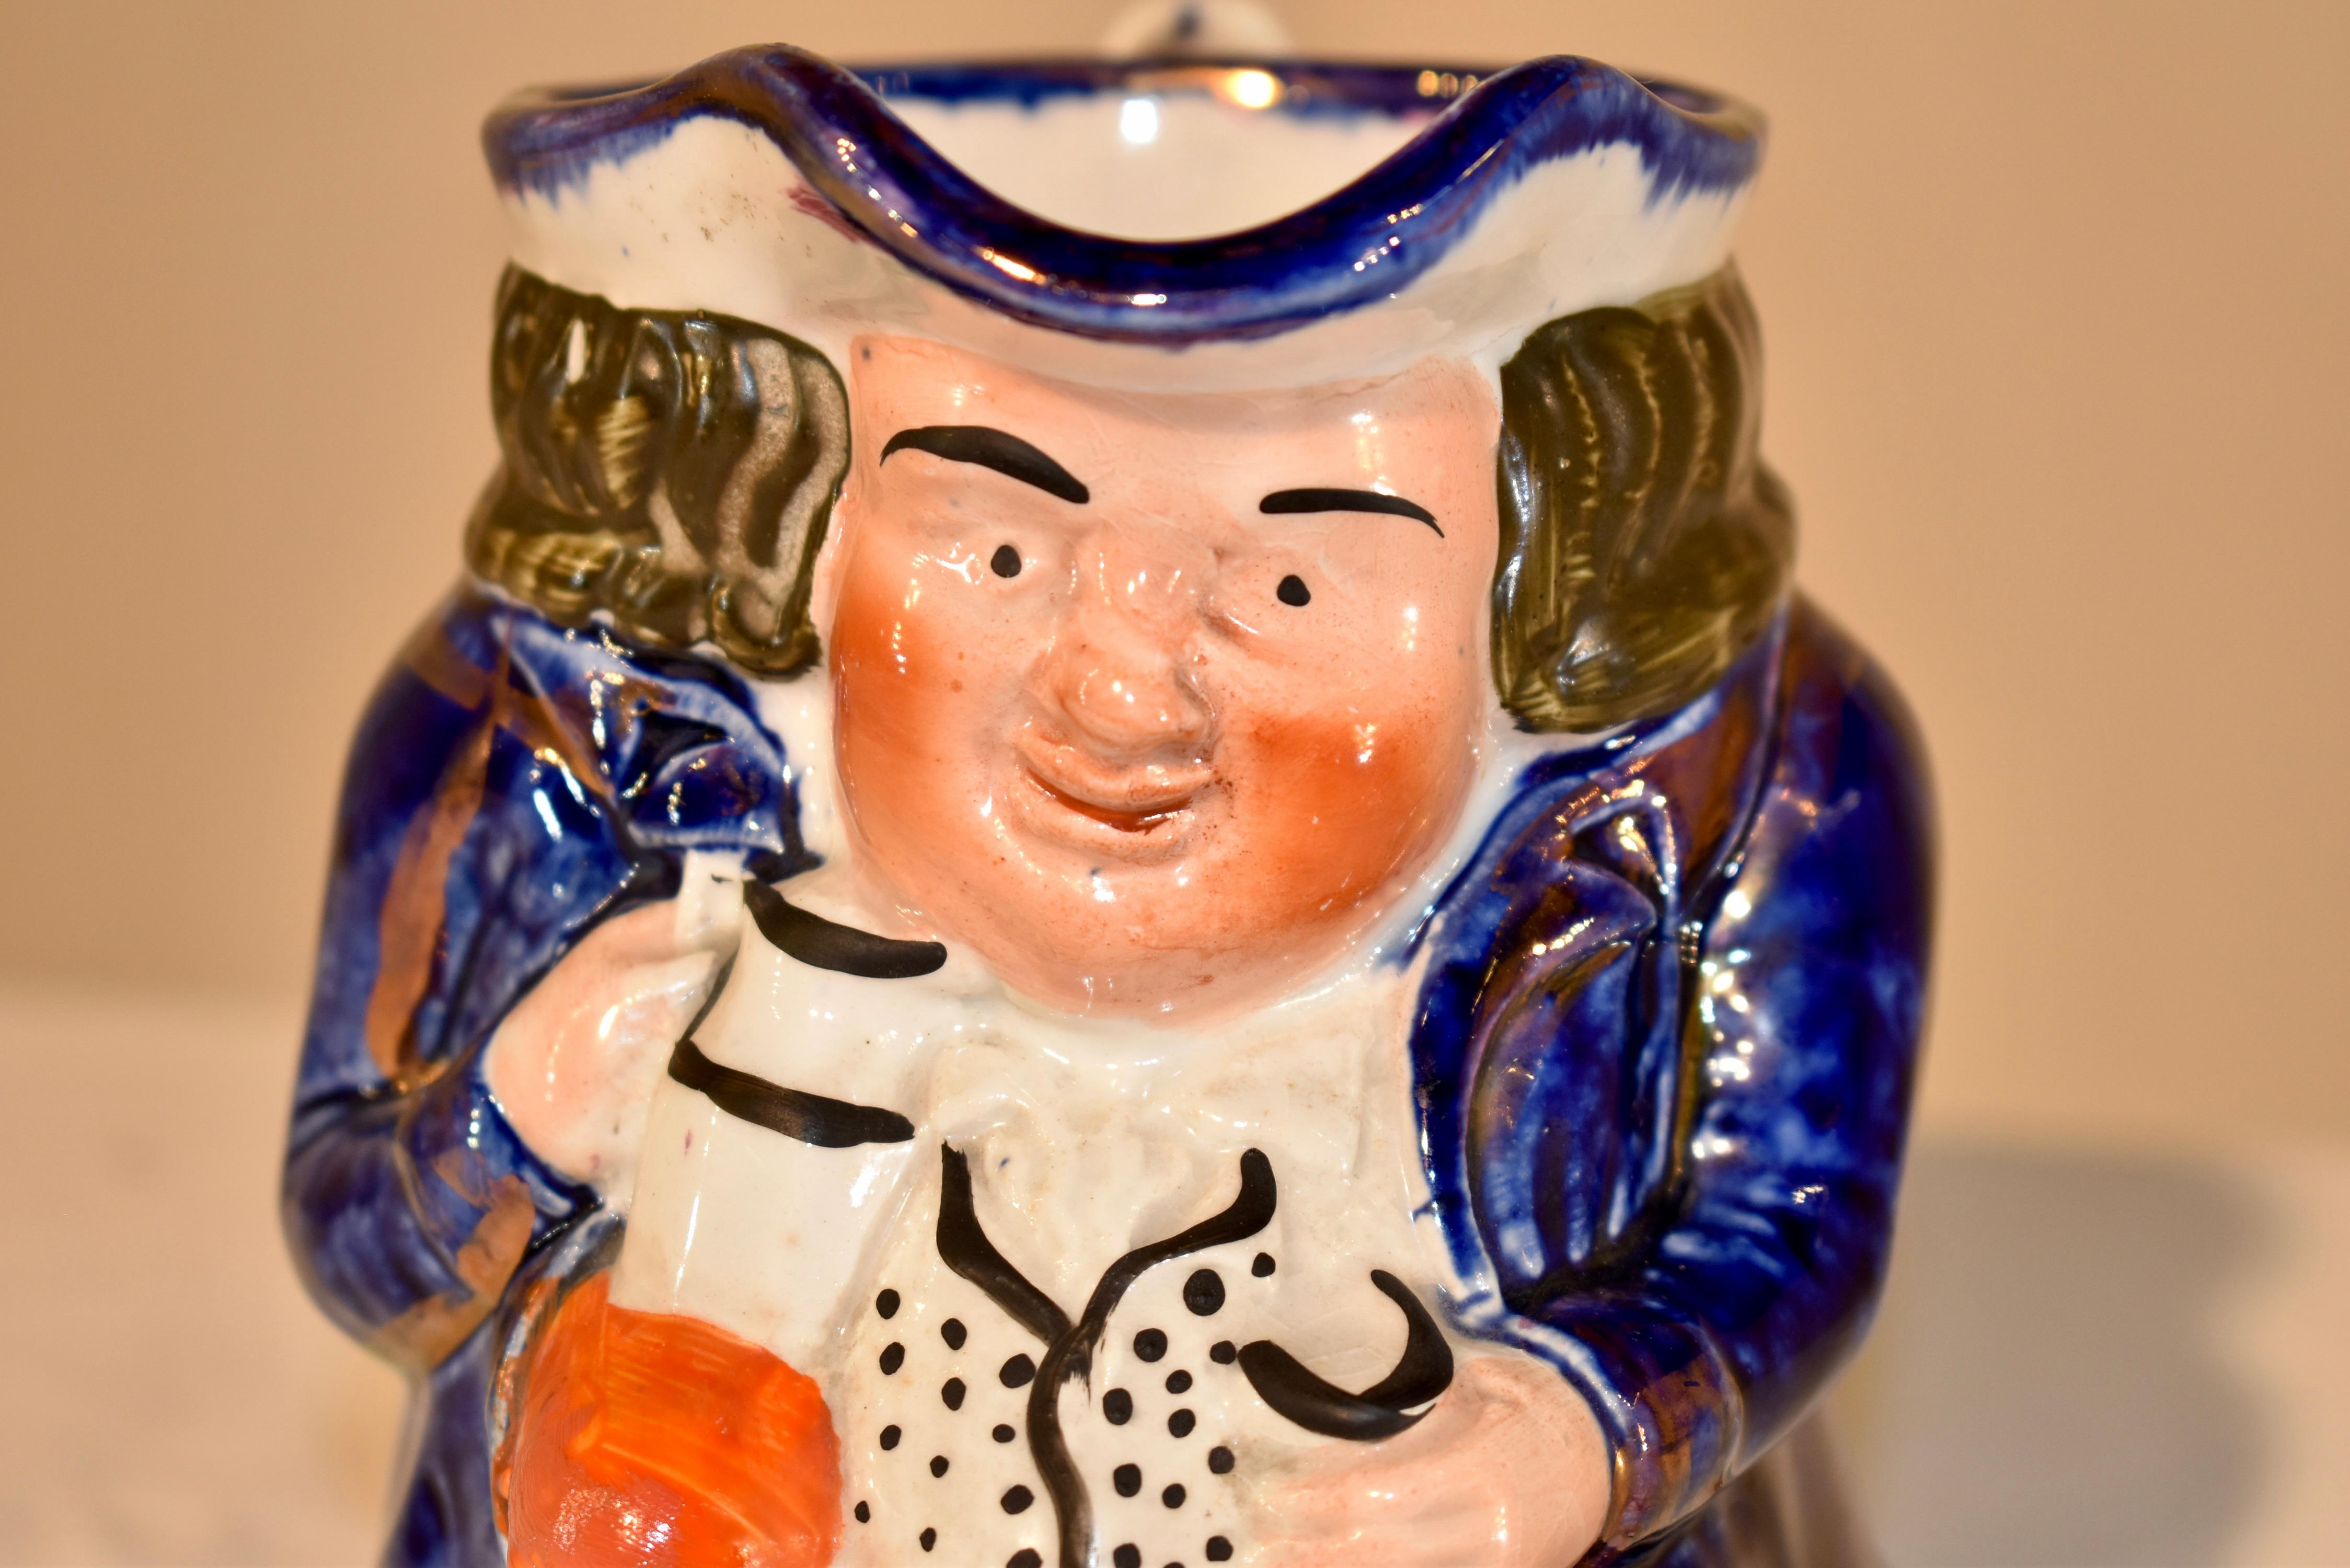 Pichet Toby en céramique du 19e siècle provenant de la région du Staffordshire en Angleterre.  Il a une veste bleue et une expression chaleureuse sur le visage.  La cruche est également ornée d'accents cuivrés pour une meilleure définition.  